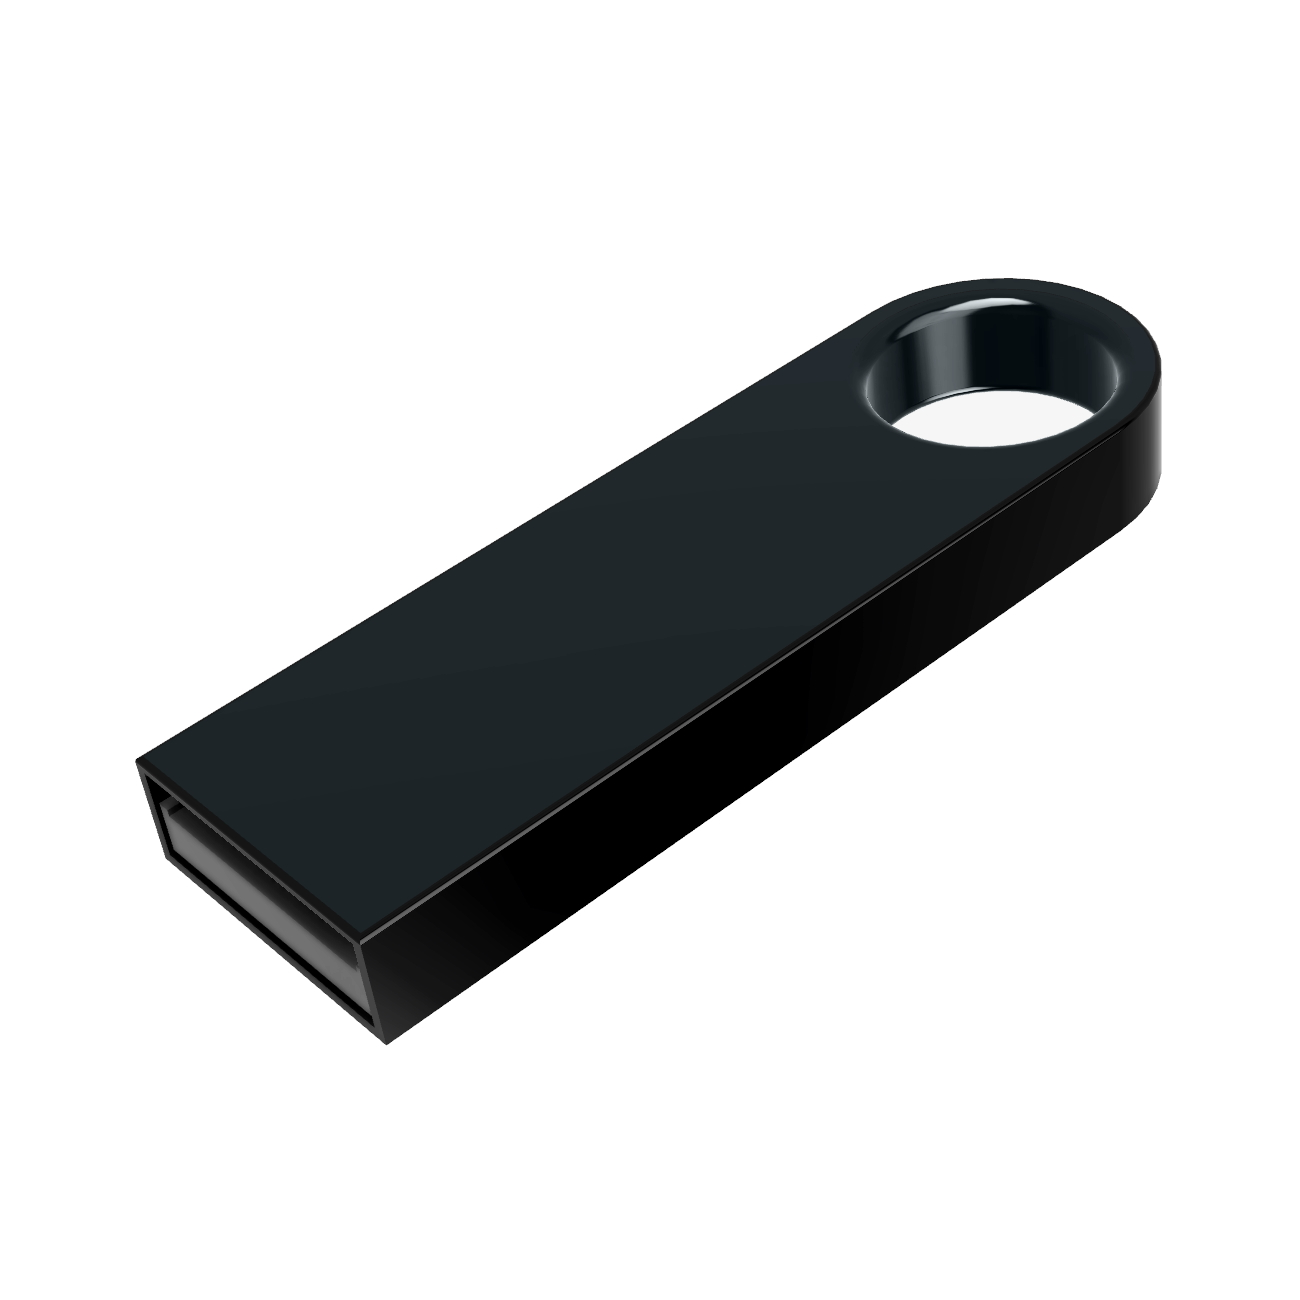 GERMANY (Schwarz, USB-Stick 1 GB) SE09 USB ®